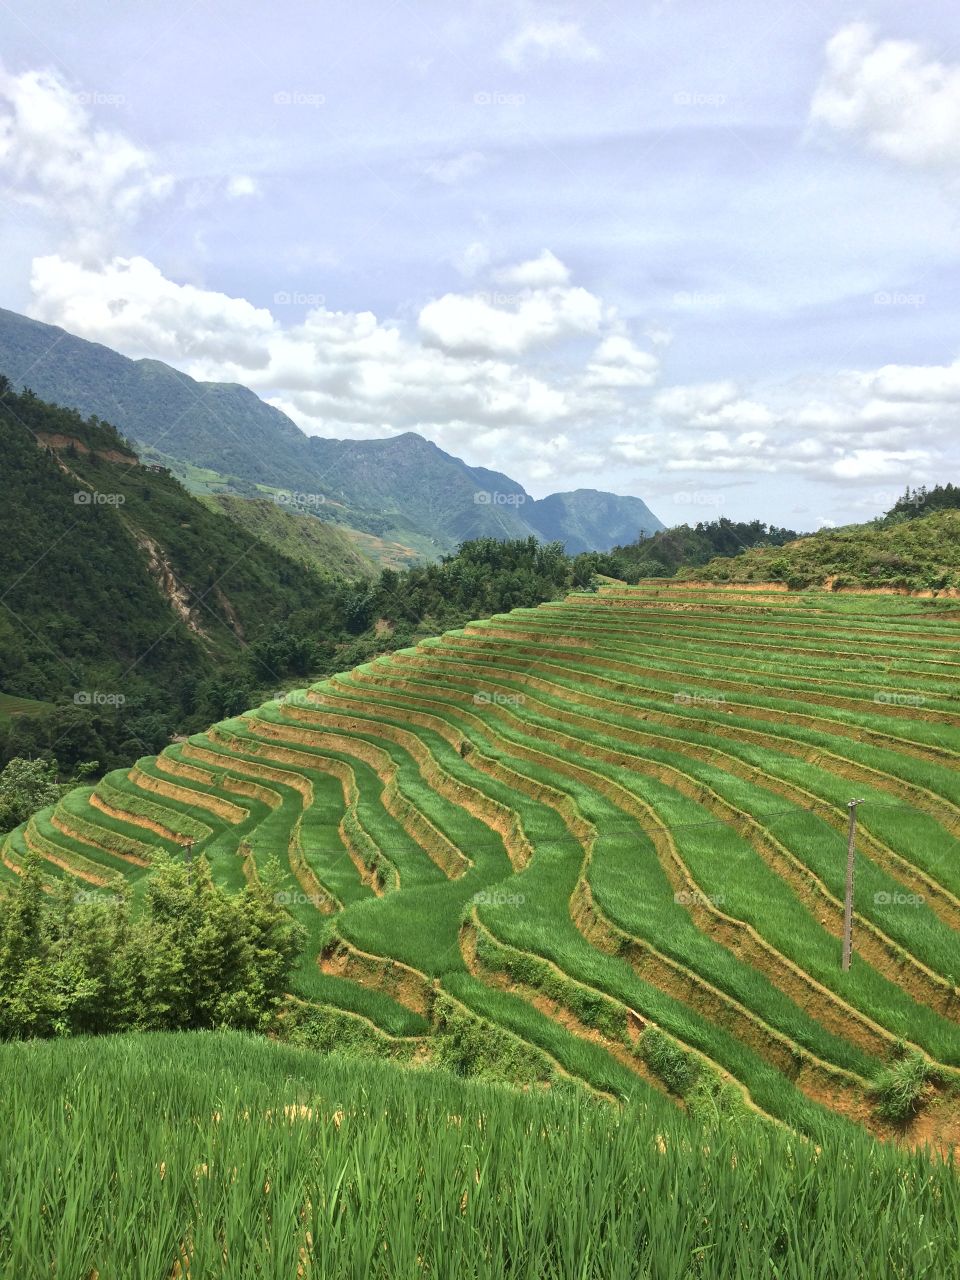 Rice field in Nothern Vietnam